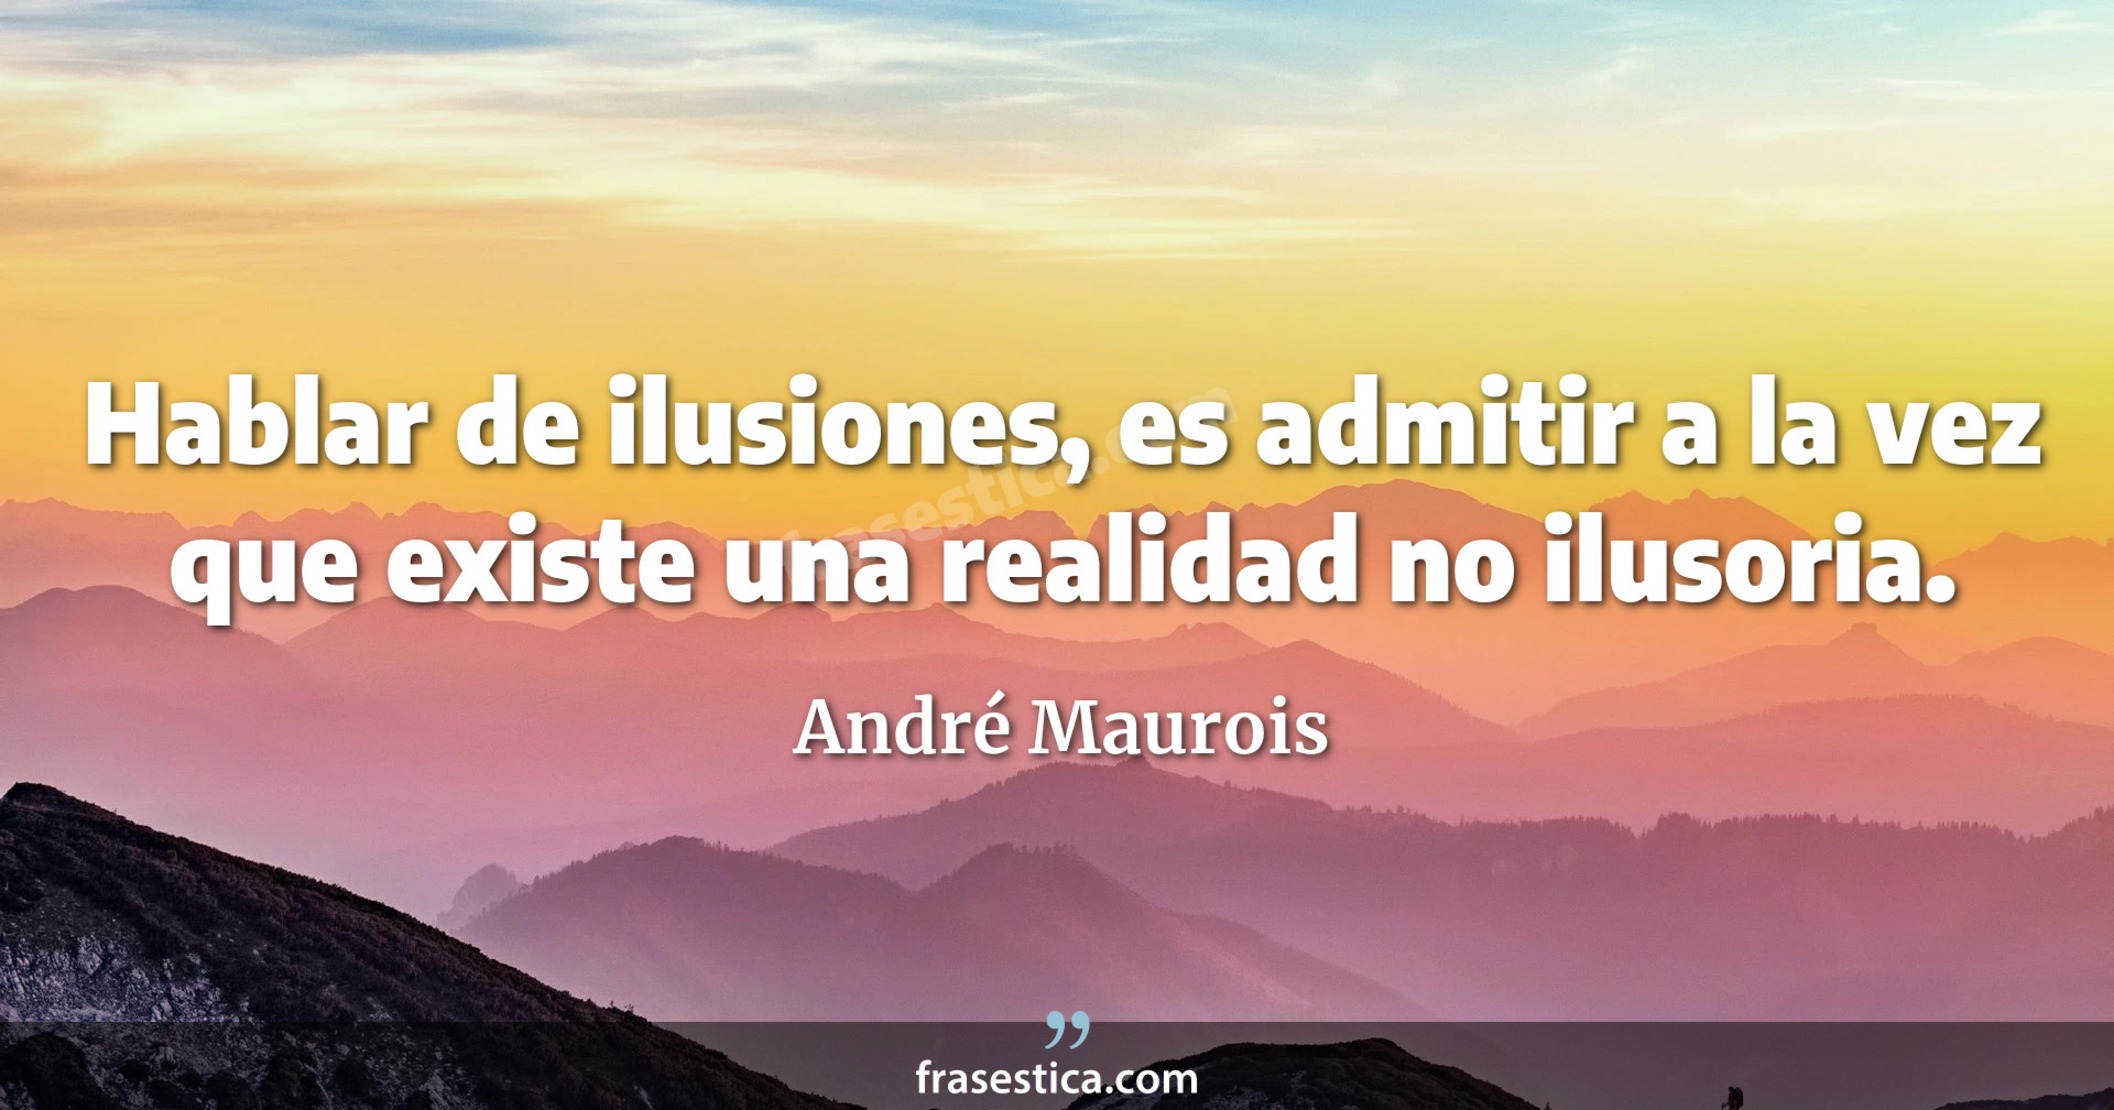 Hablar de ilusiones, es admitir a la vez que existe una realidad no ilusoria. - André Maurois